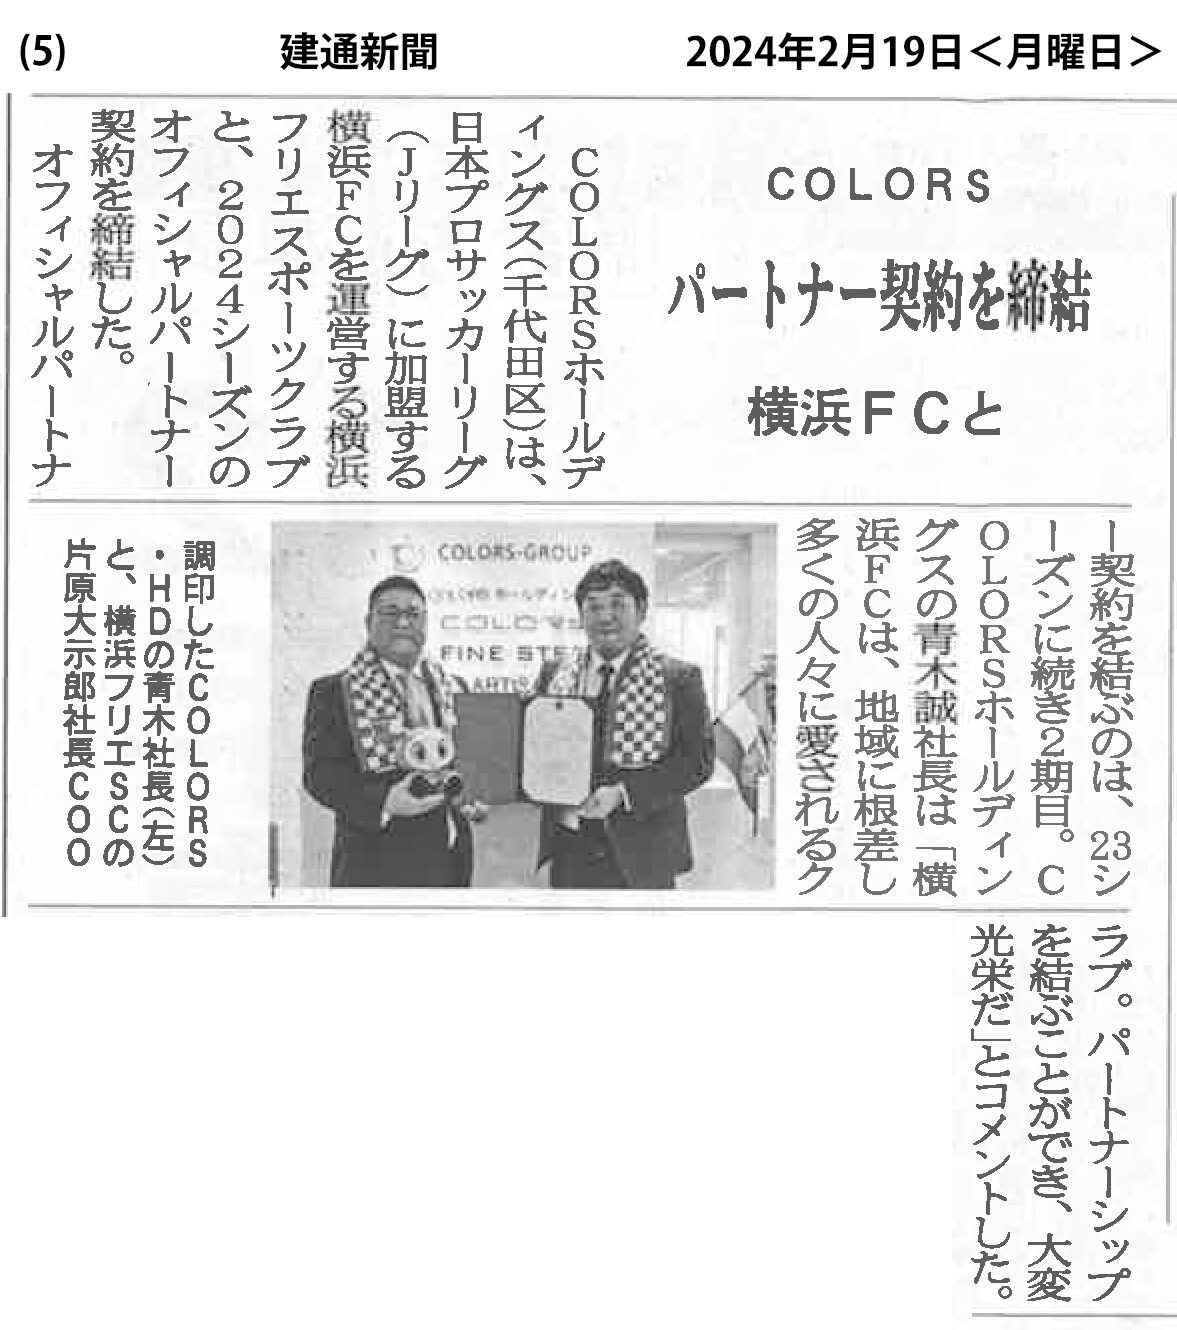 『建通新聞』2024年2月19日号にて、横浜FCとのパートナー契約についてご紹介いただきました。